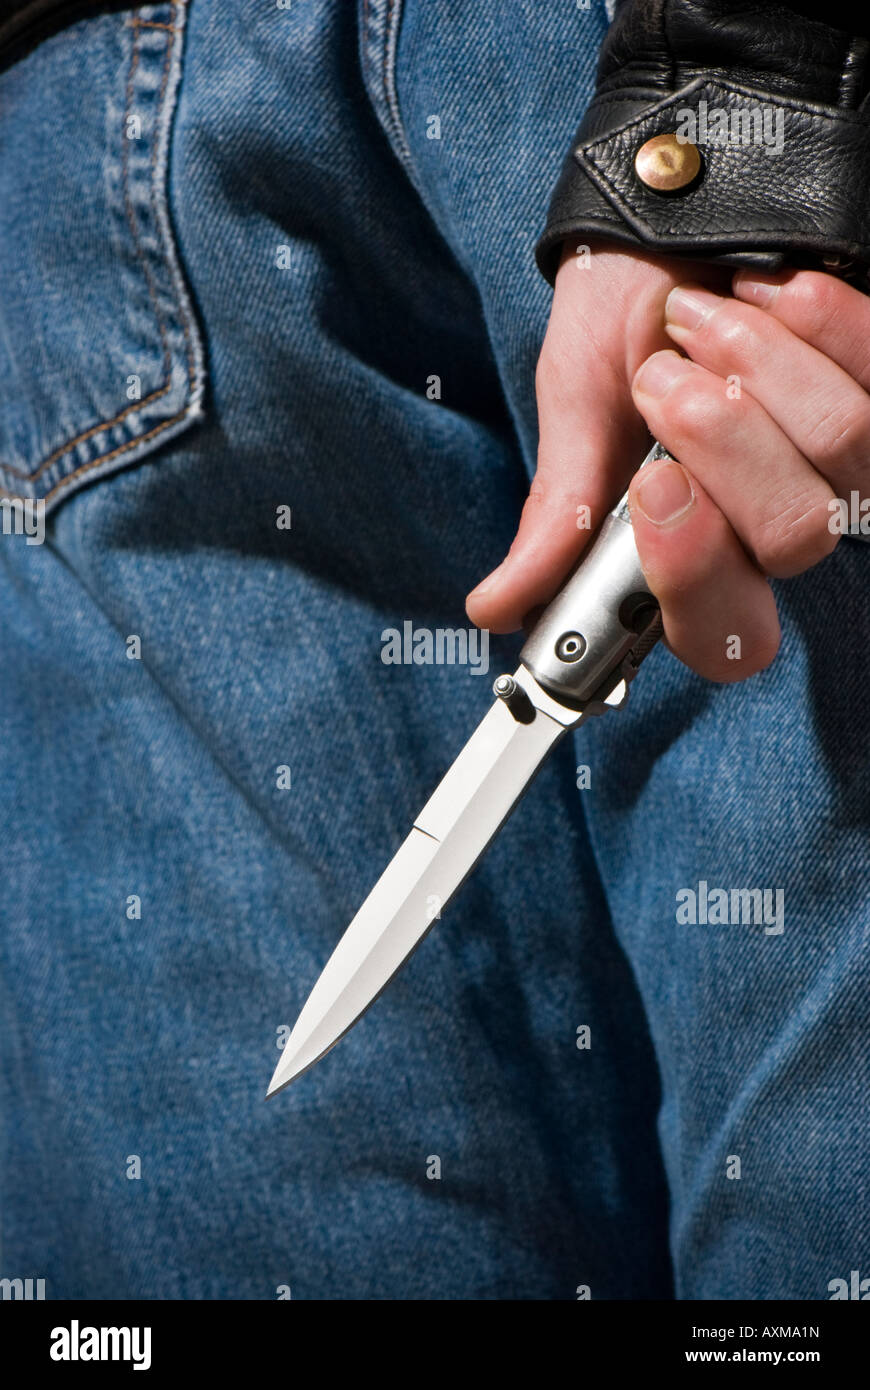 La criminalité couteau - l'attente à l'aide d'un couteau caché derrière retour Banque D'Images